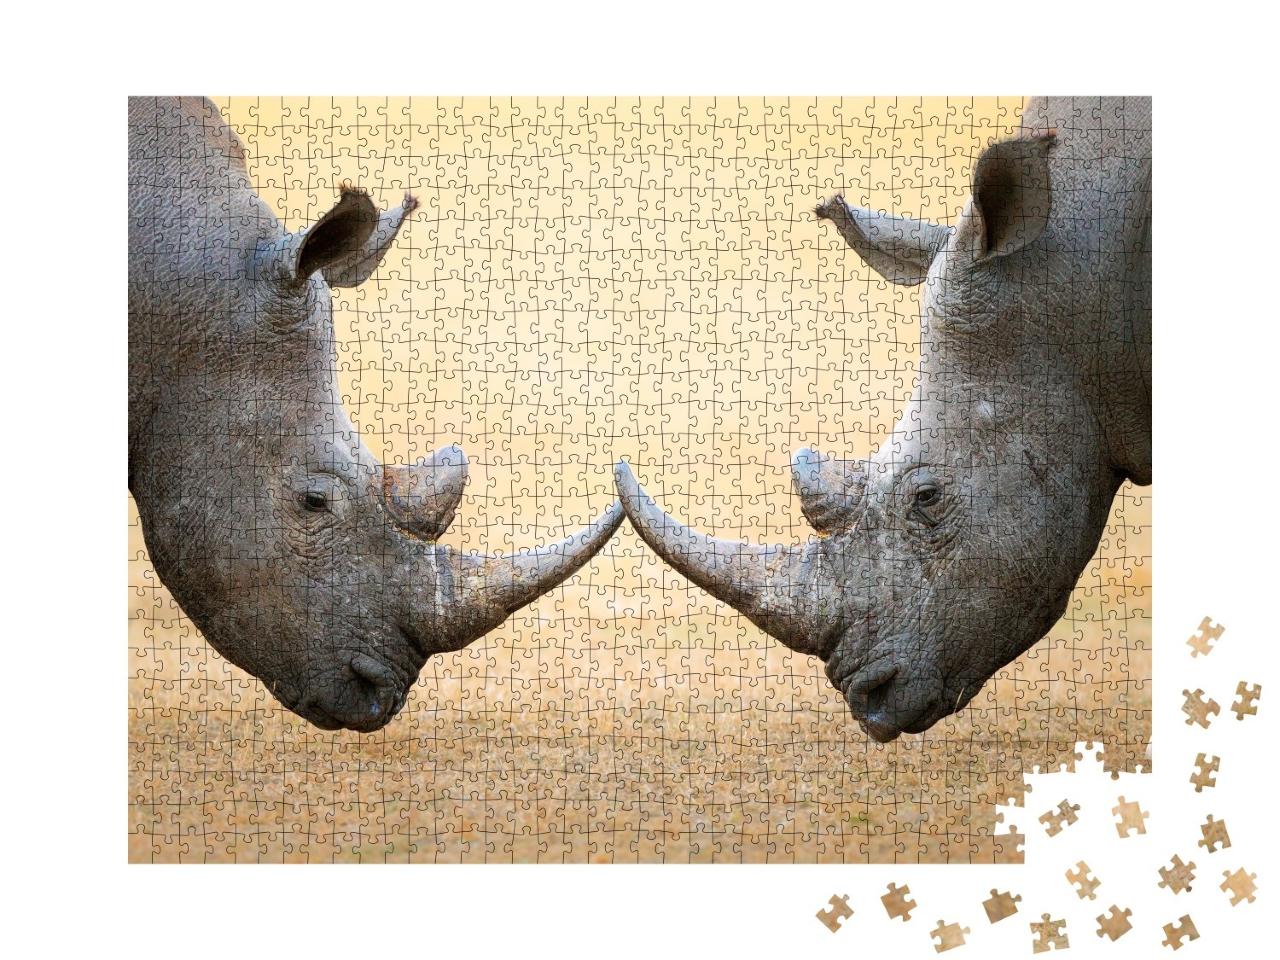 Puzzle de 1000 pièces « Rhinocéros blancs, au coude à coude - Parc national Kruger, Afrique du Sud »